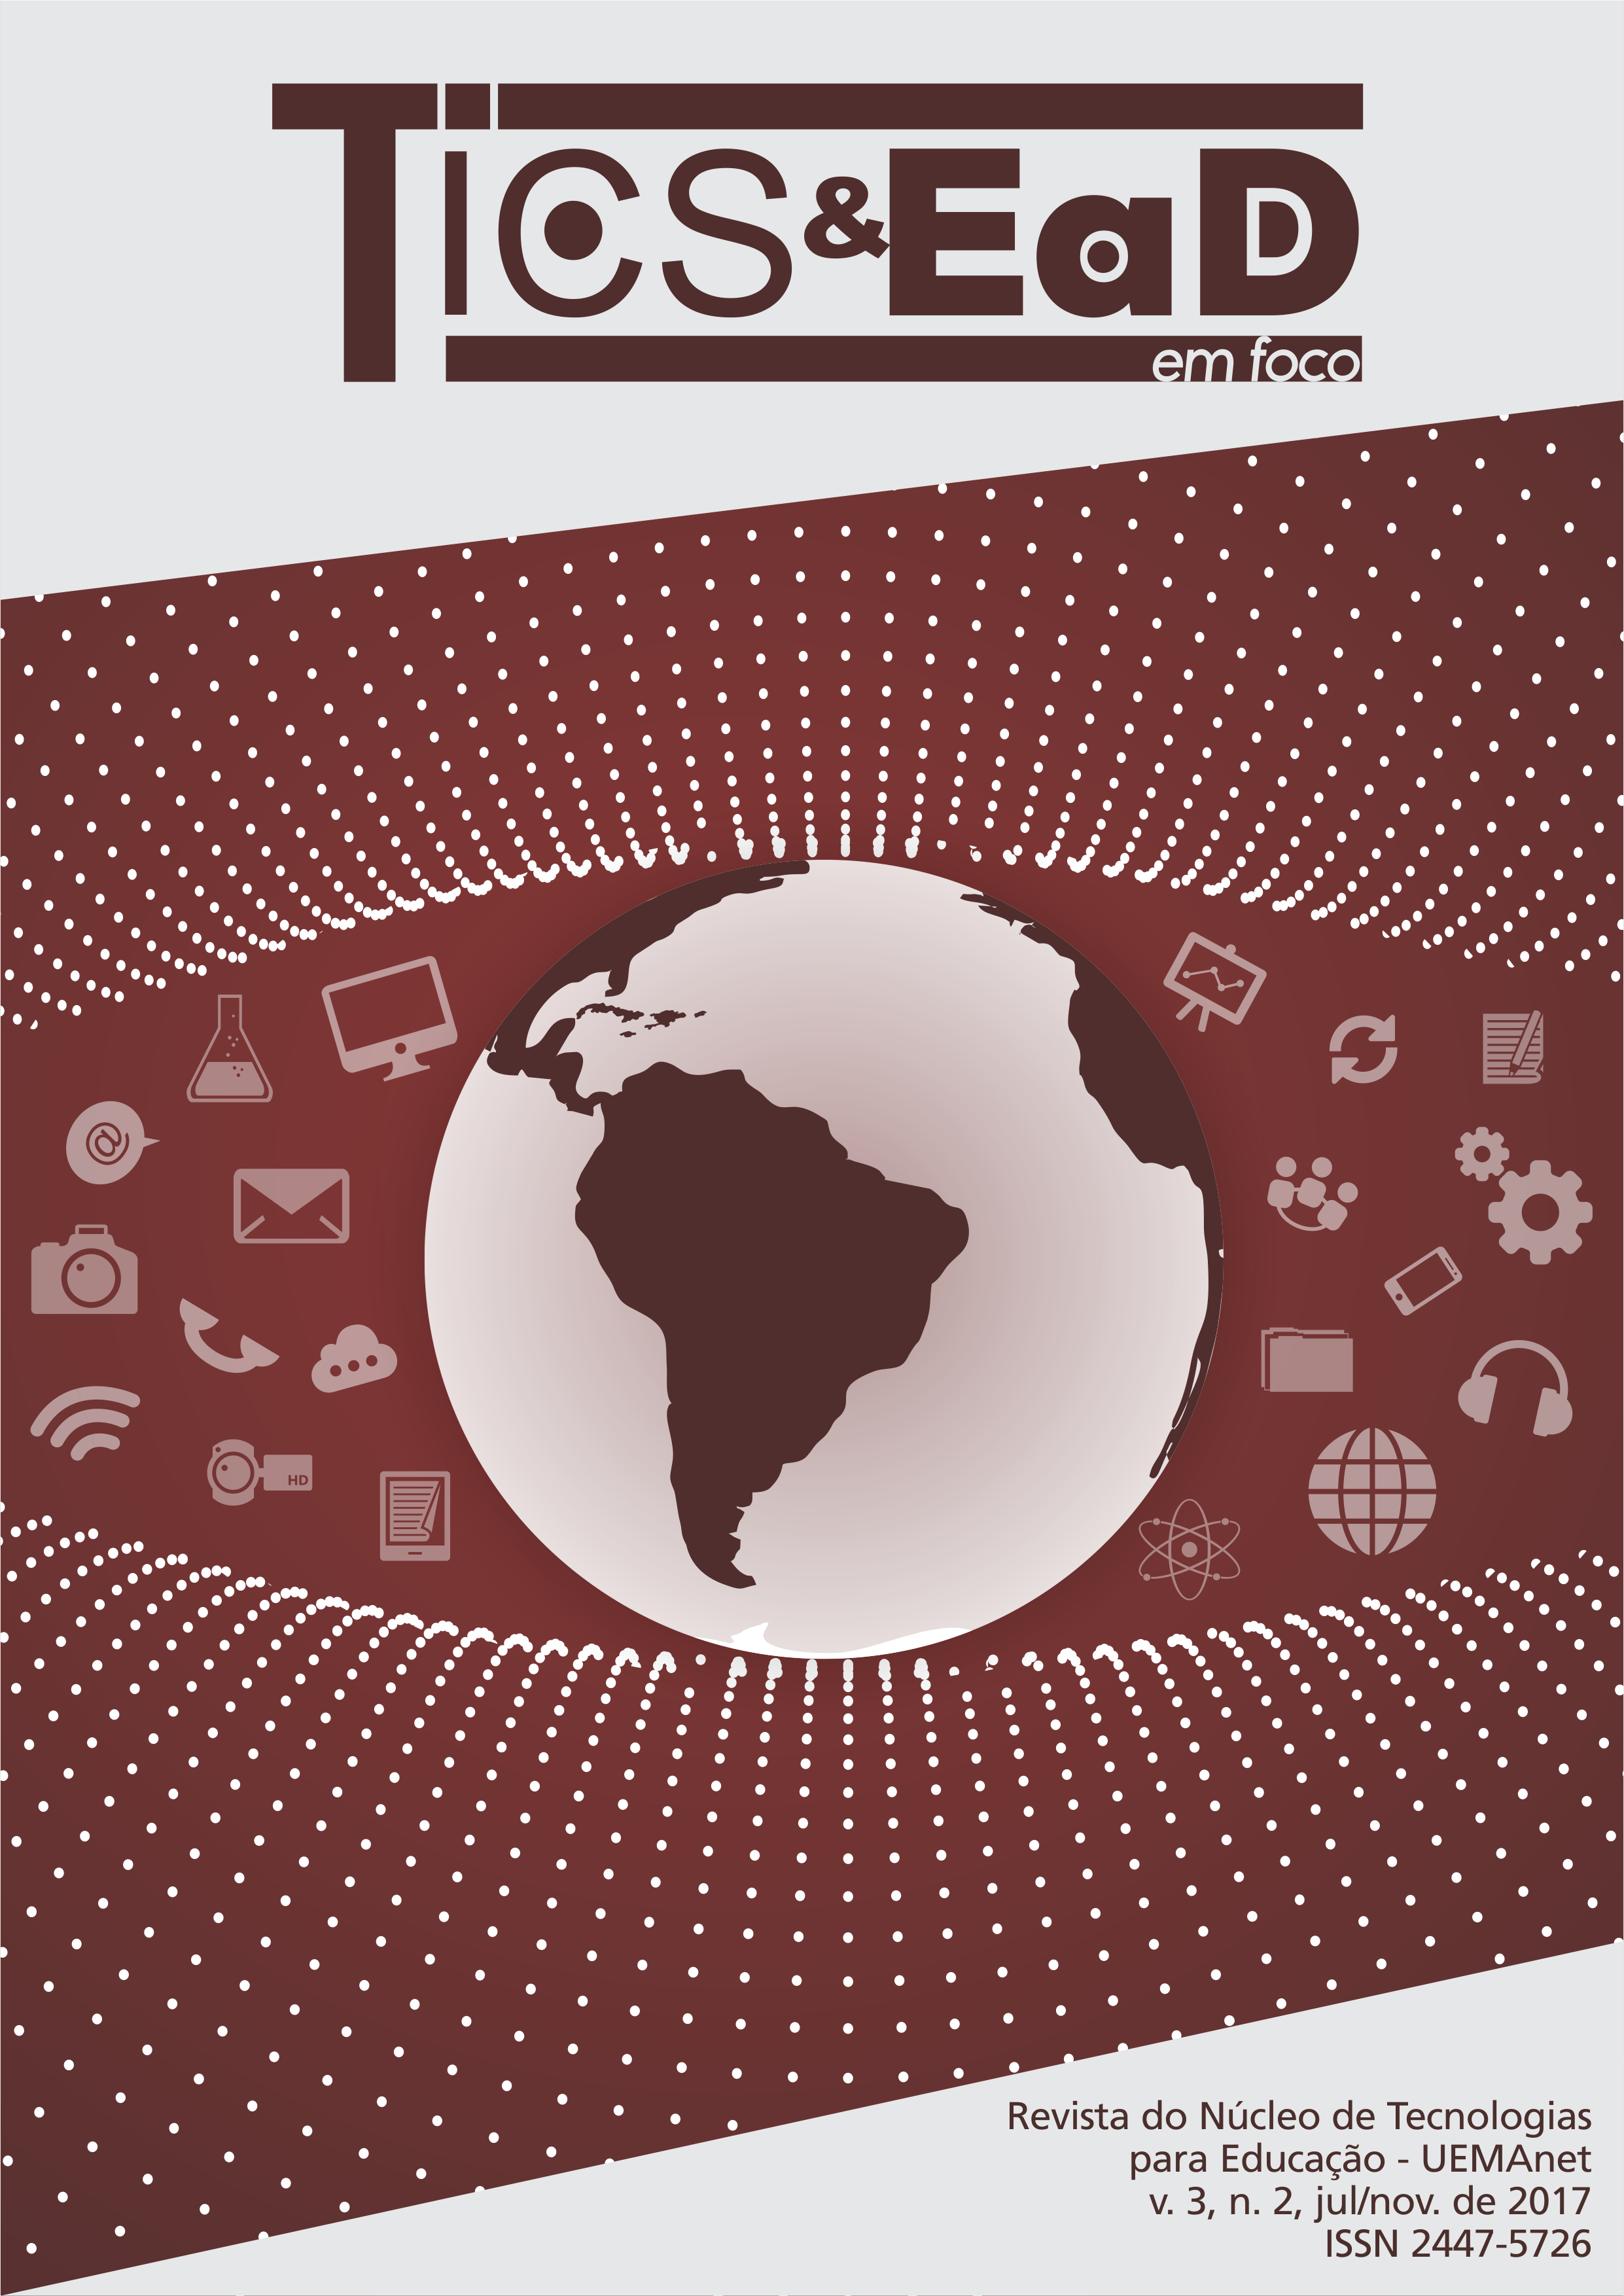 UEMA reúne 14 artigos em nova edição da TICs & EaD em Foco